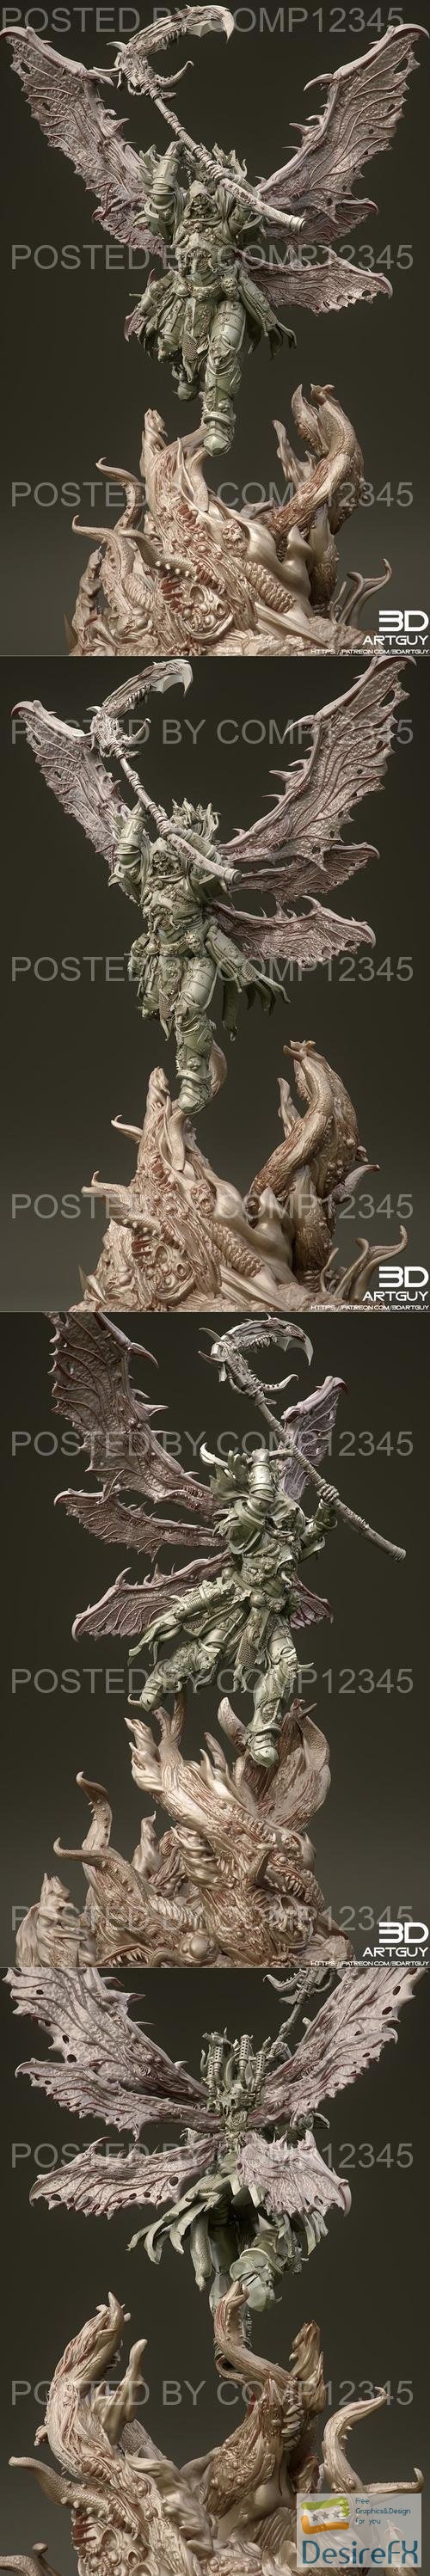 3DArtGuy - Diseased Reaper 3D Print